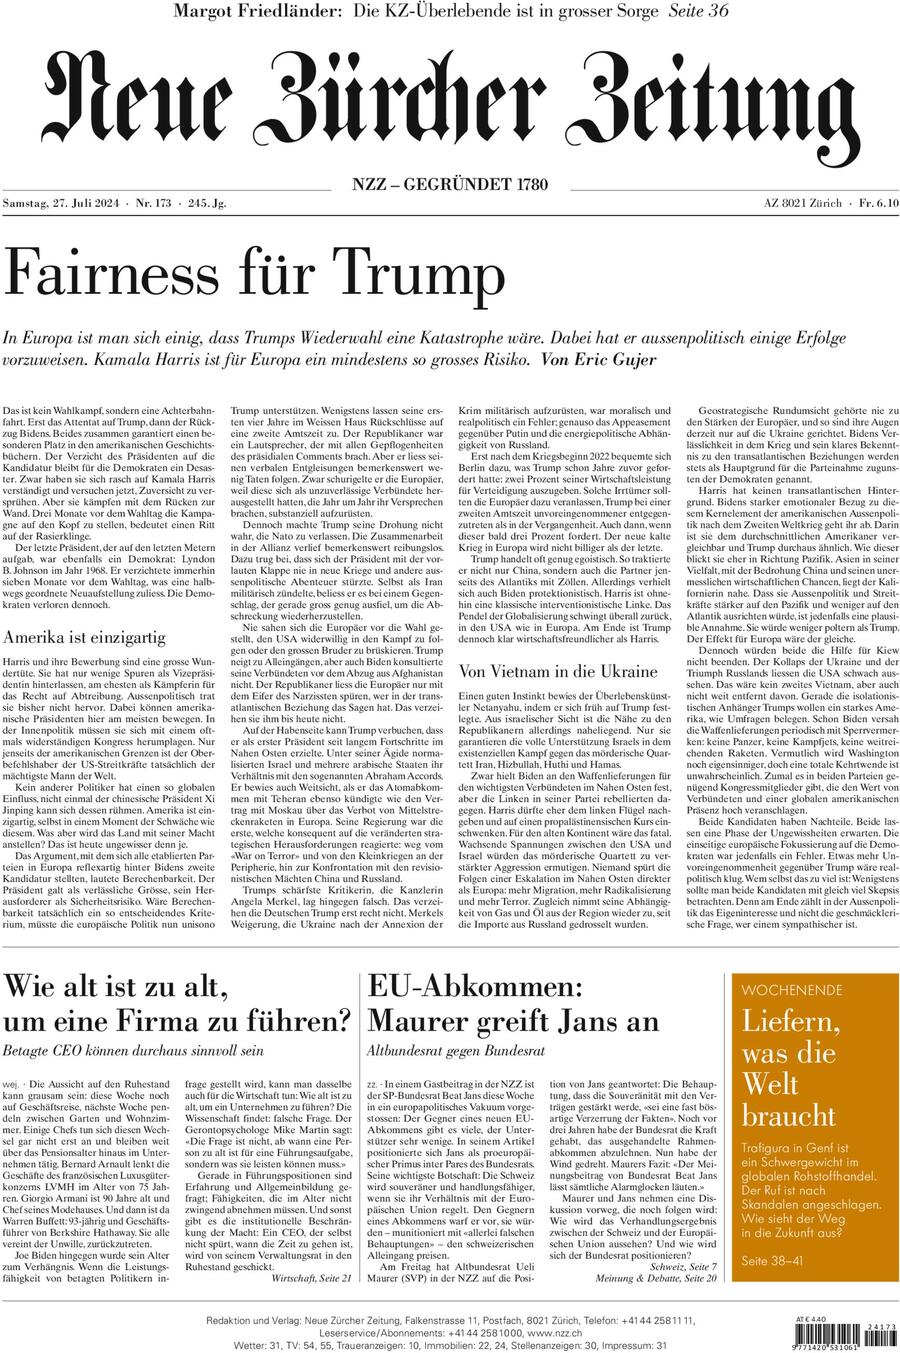 NZZ (Neue Zürcher Zeitung) - Front Page - 07/27/2024